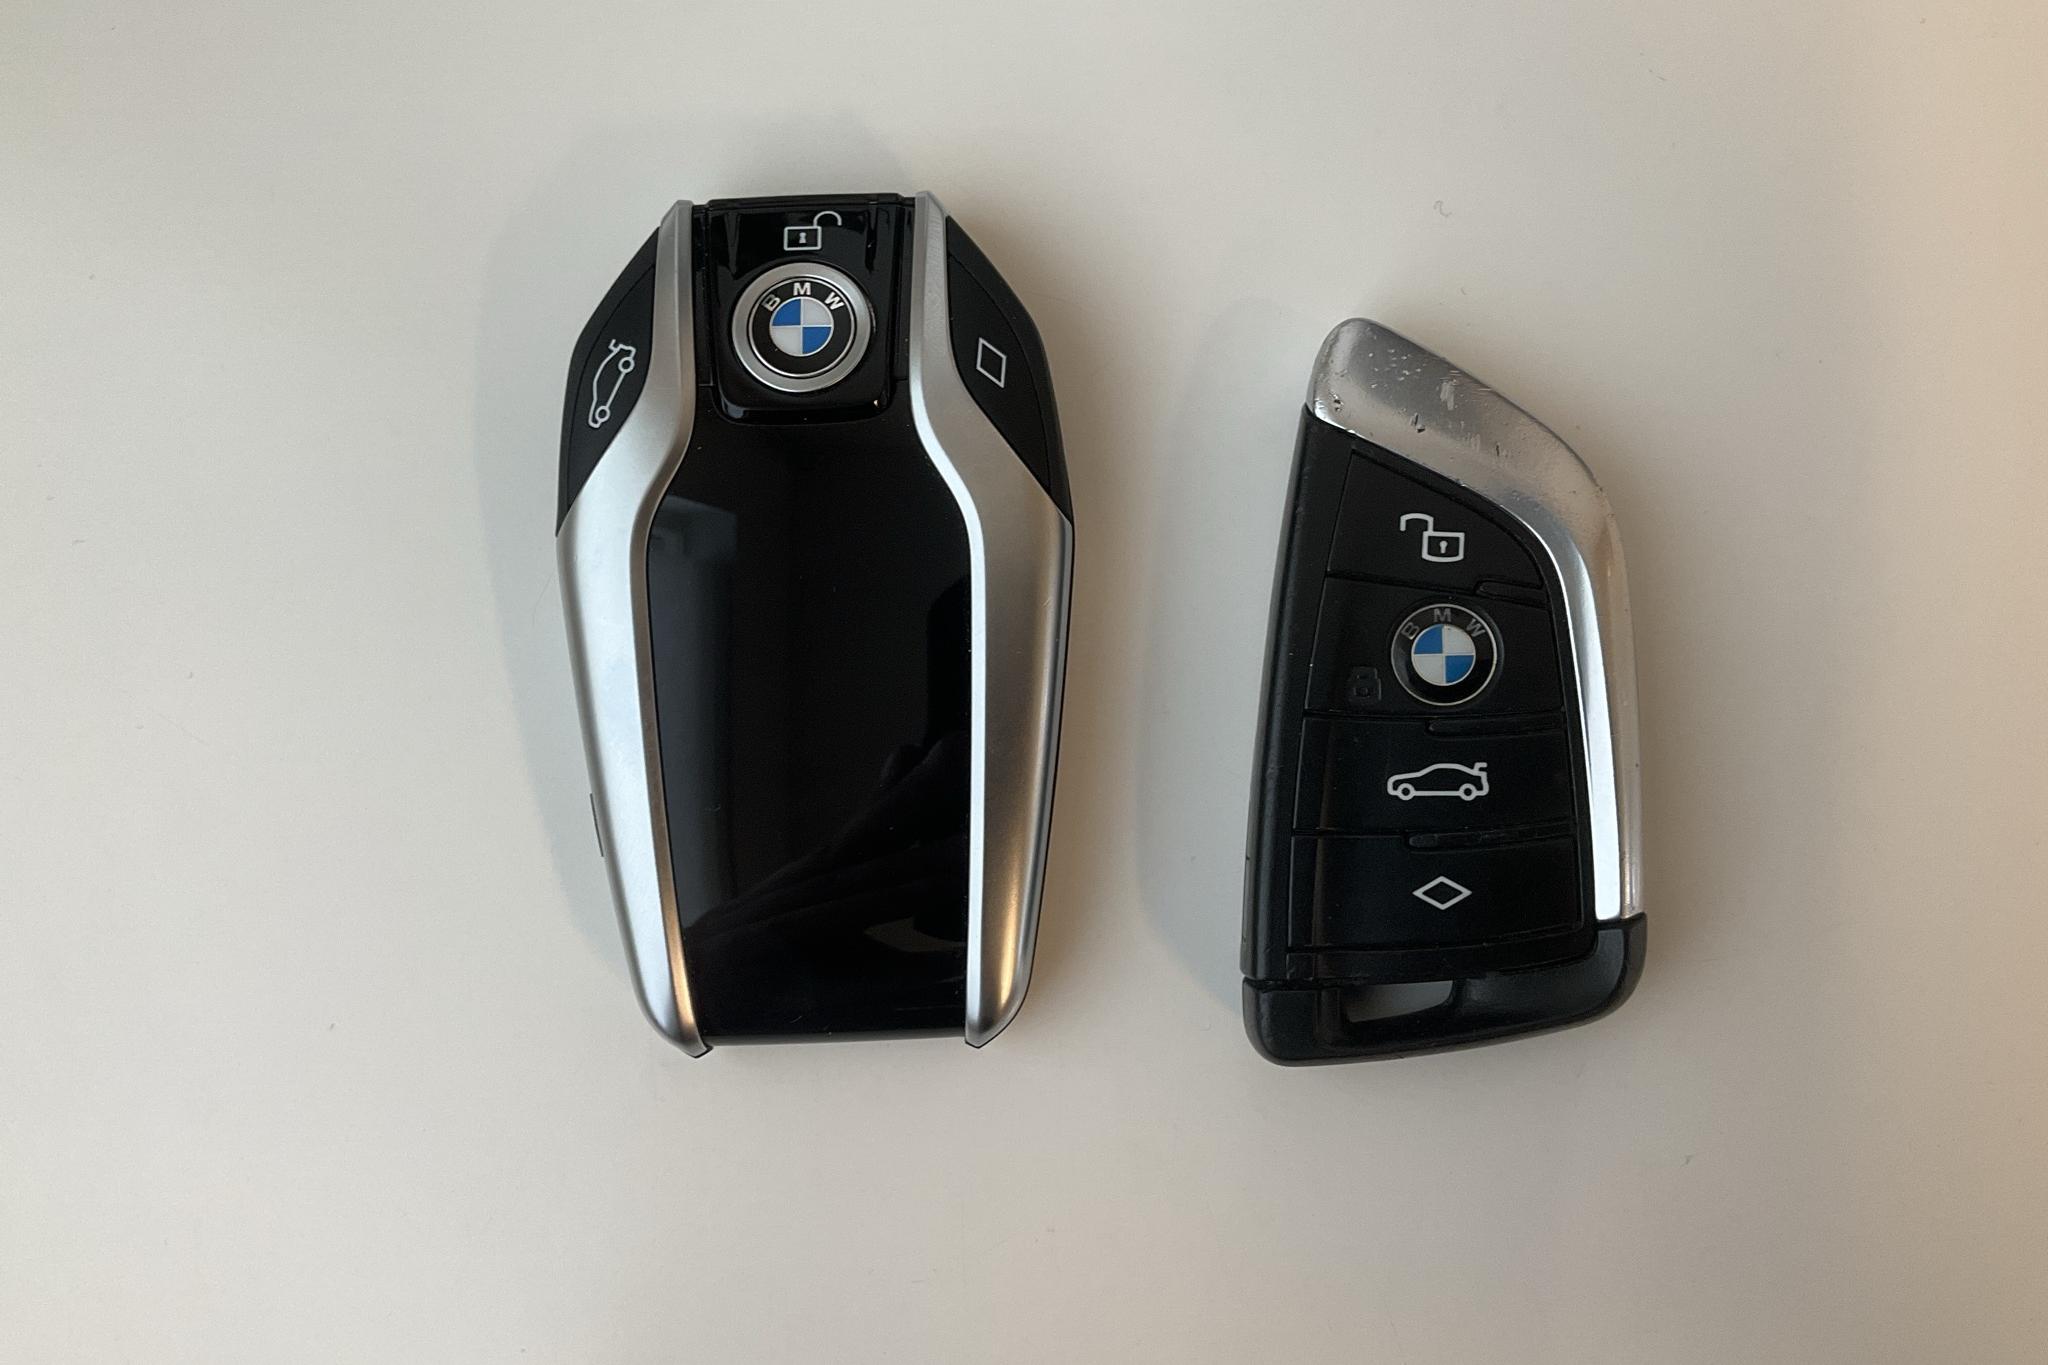 BMW X5 xDrive30d, G05 (265hk) - 85 830 km - Automatic - black - 2019